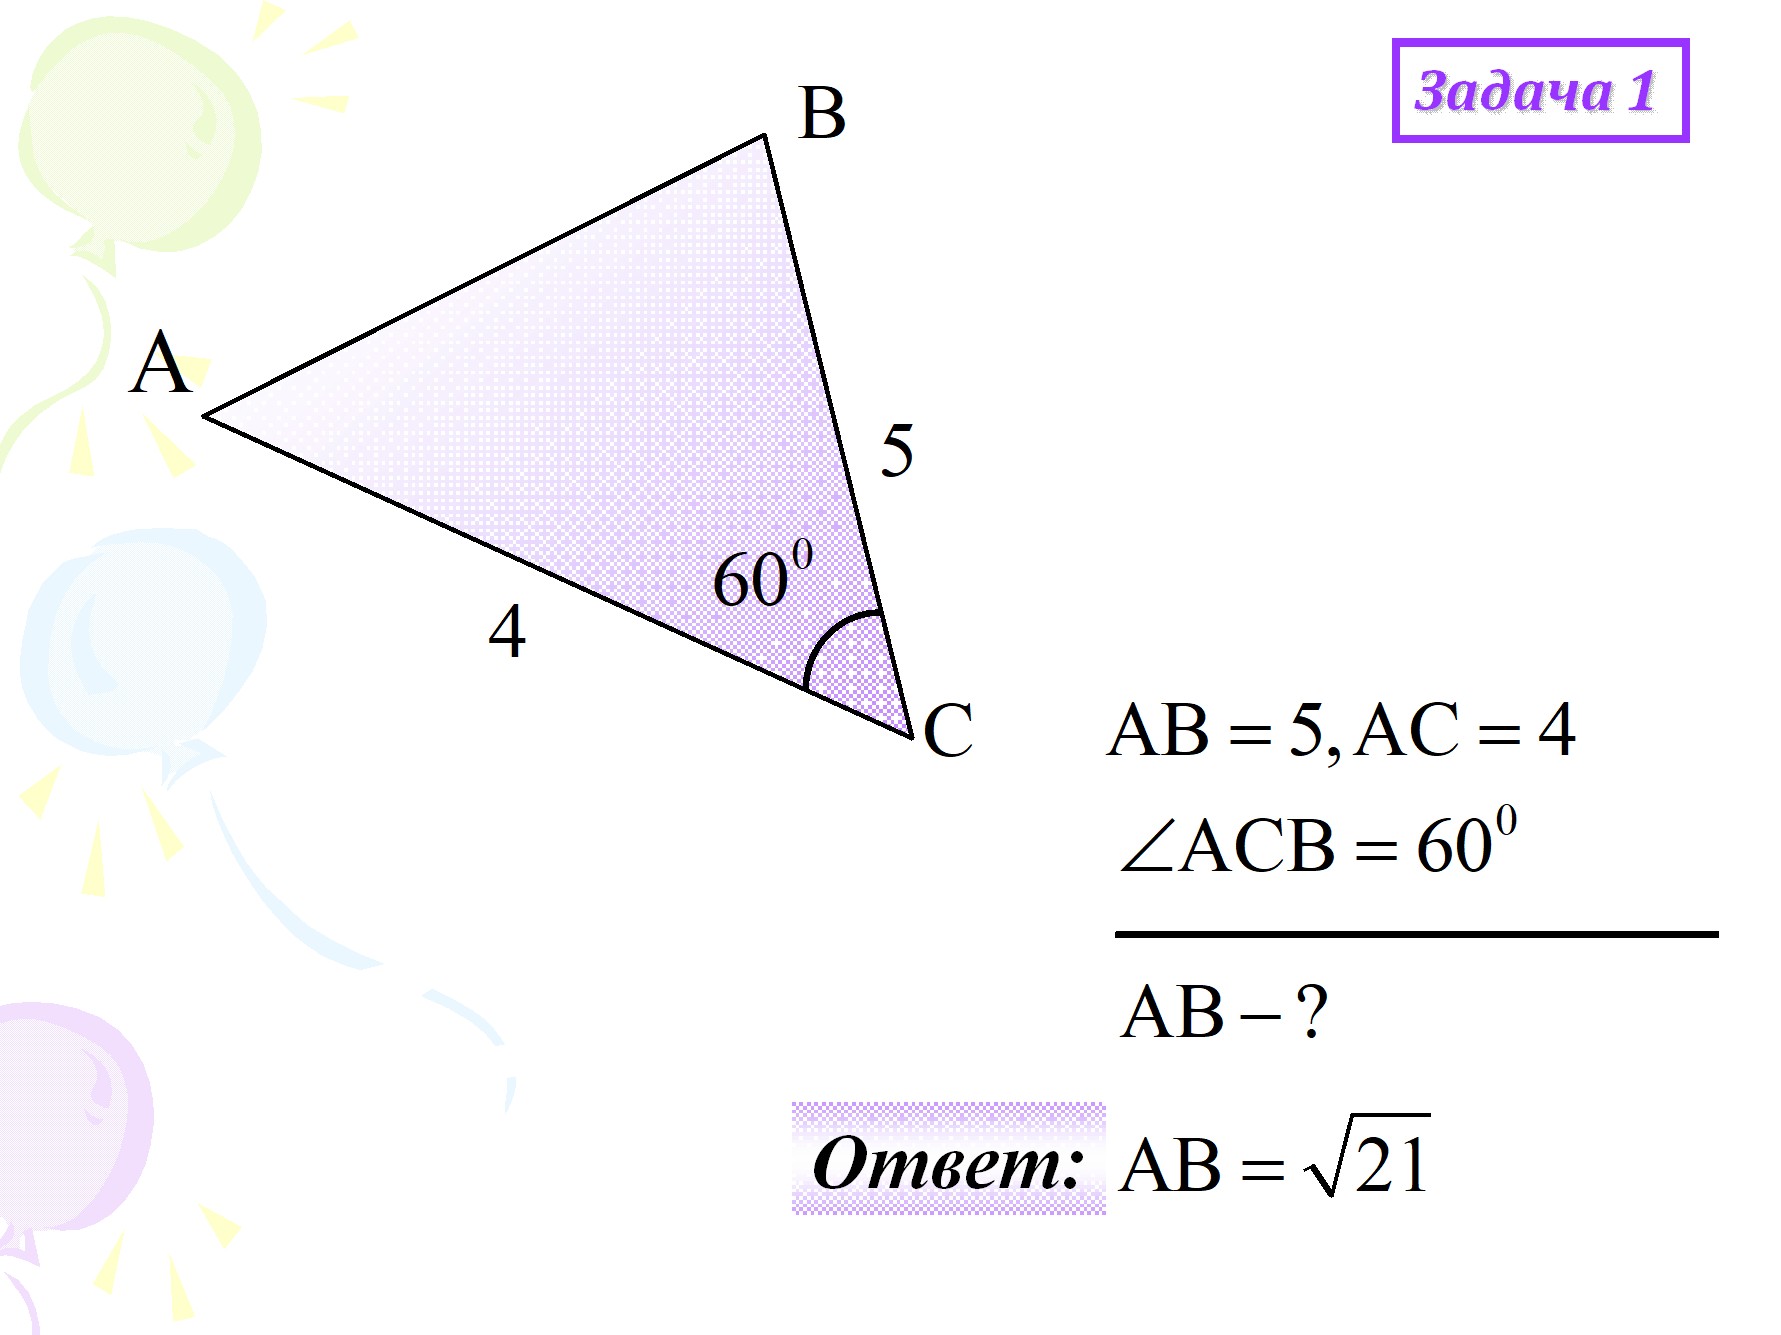 Теорема синусов для треугольника, формула и примеры